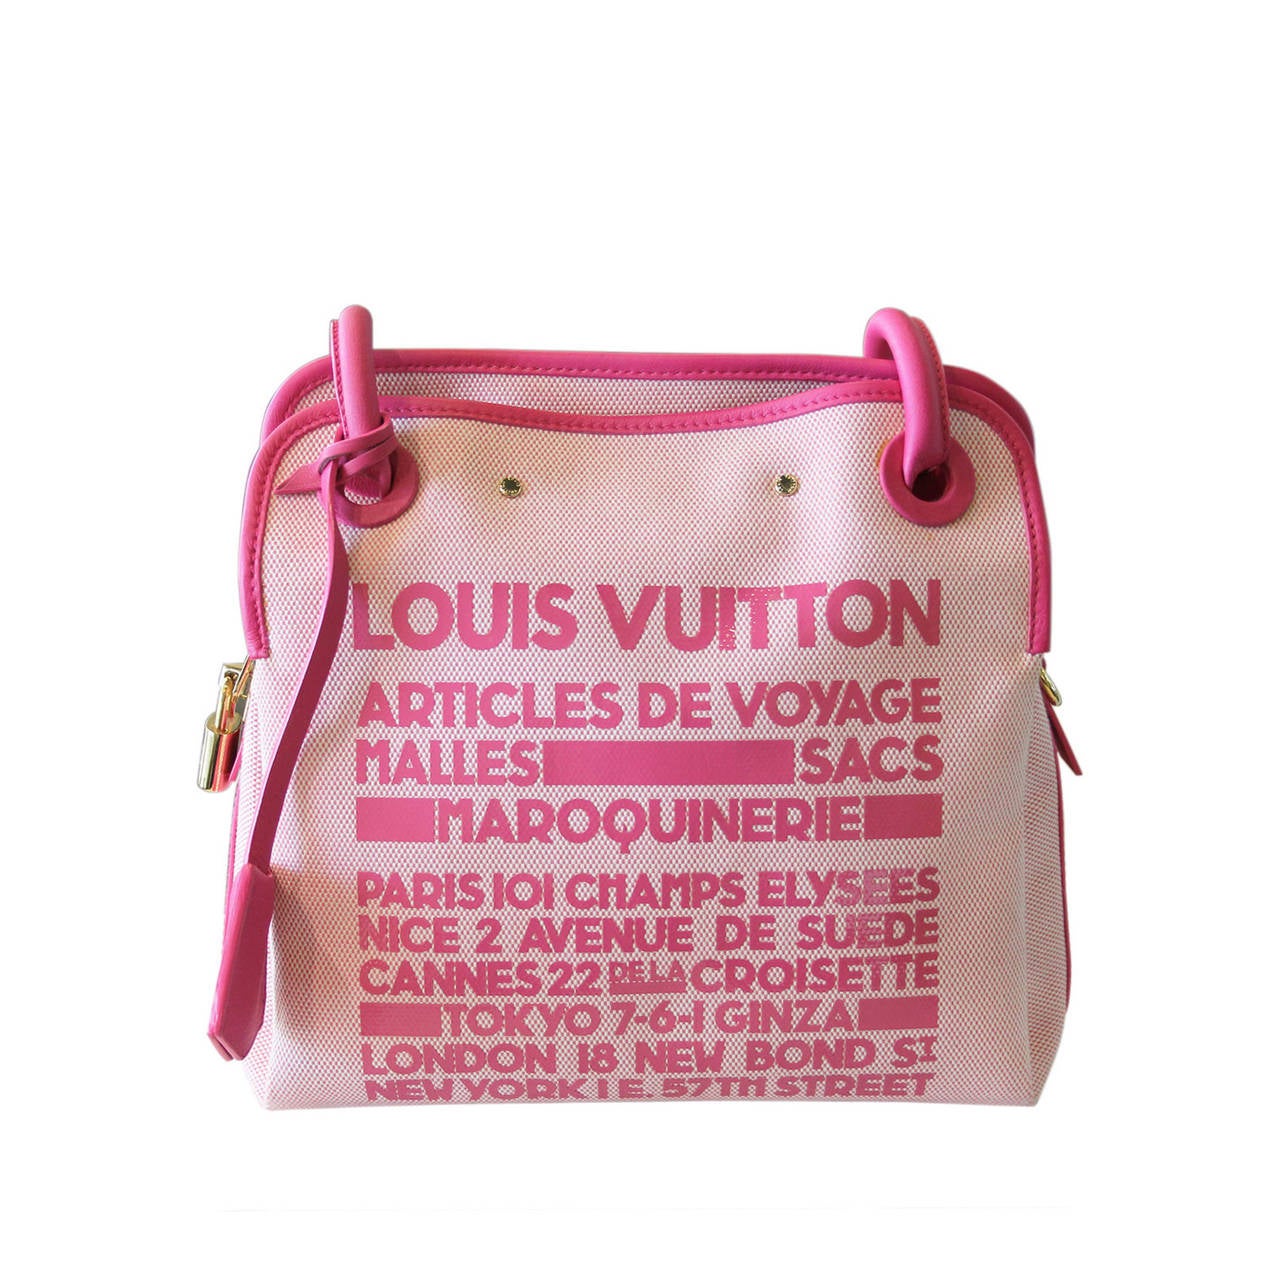 Louis Vuitton Articles de Voyage Pink Rider Bag